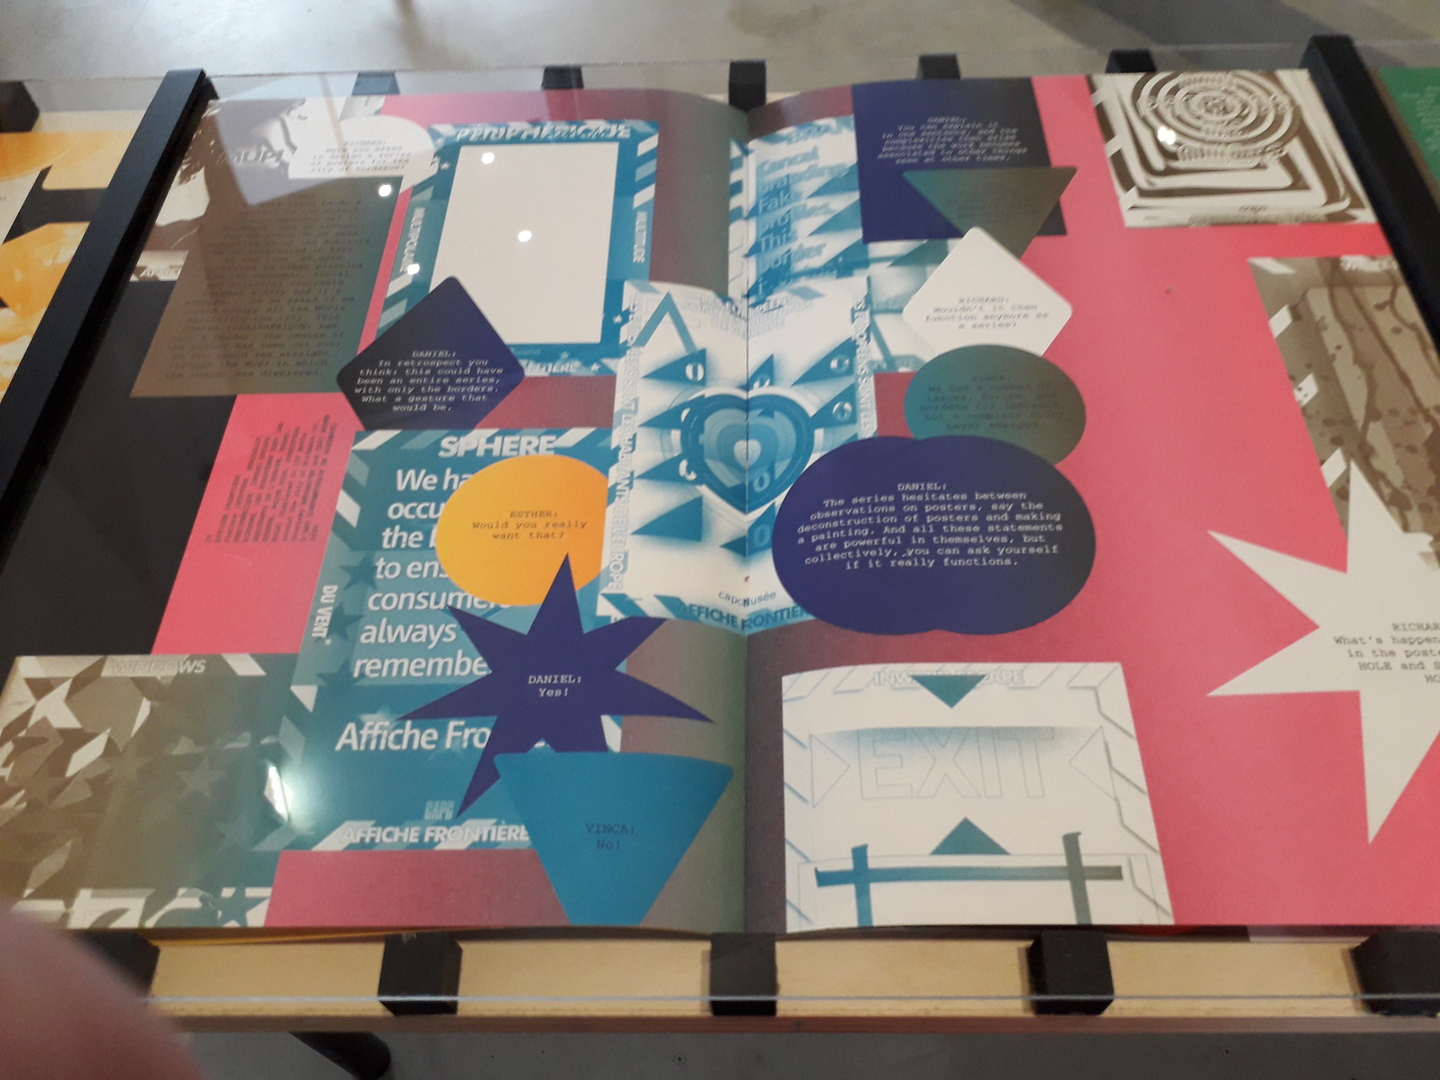 Double page d'un livre avec visuels, textes et formes à dominante rose et bleue